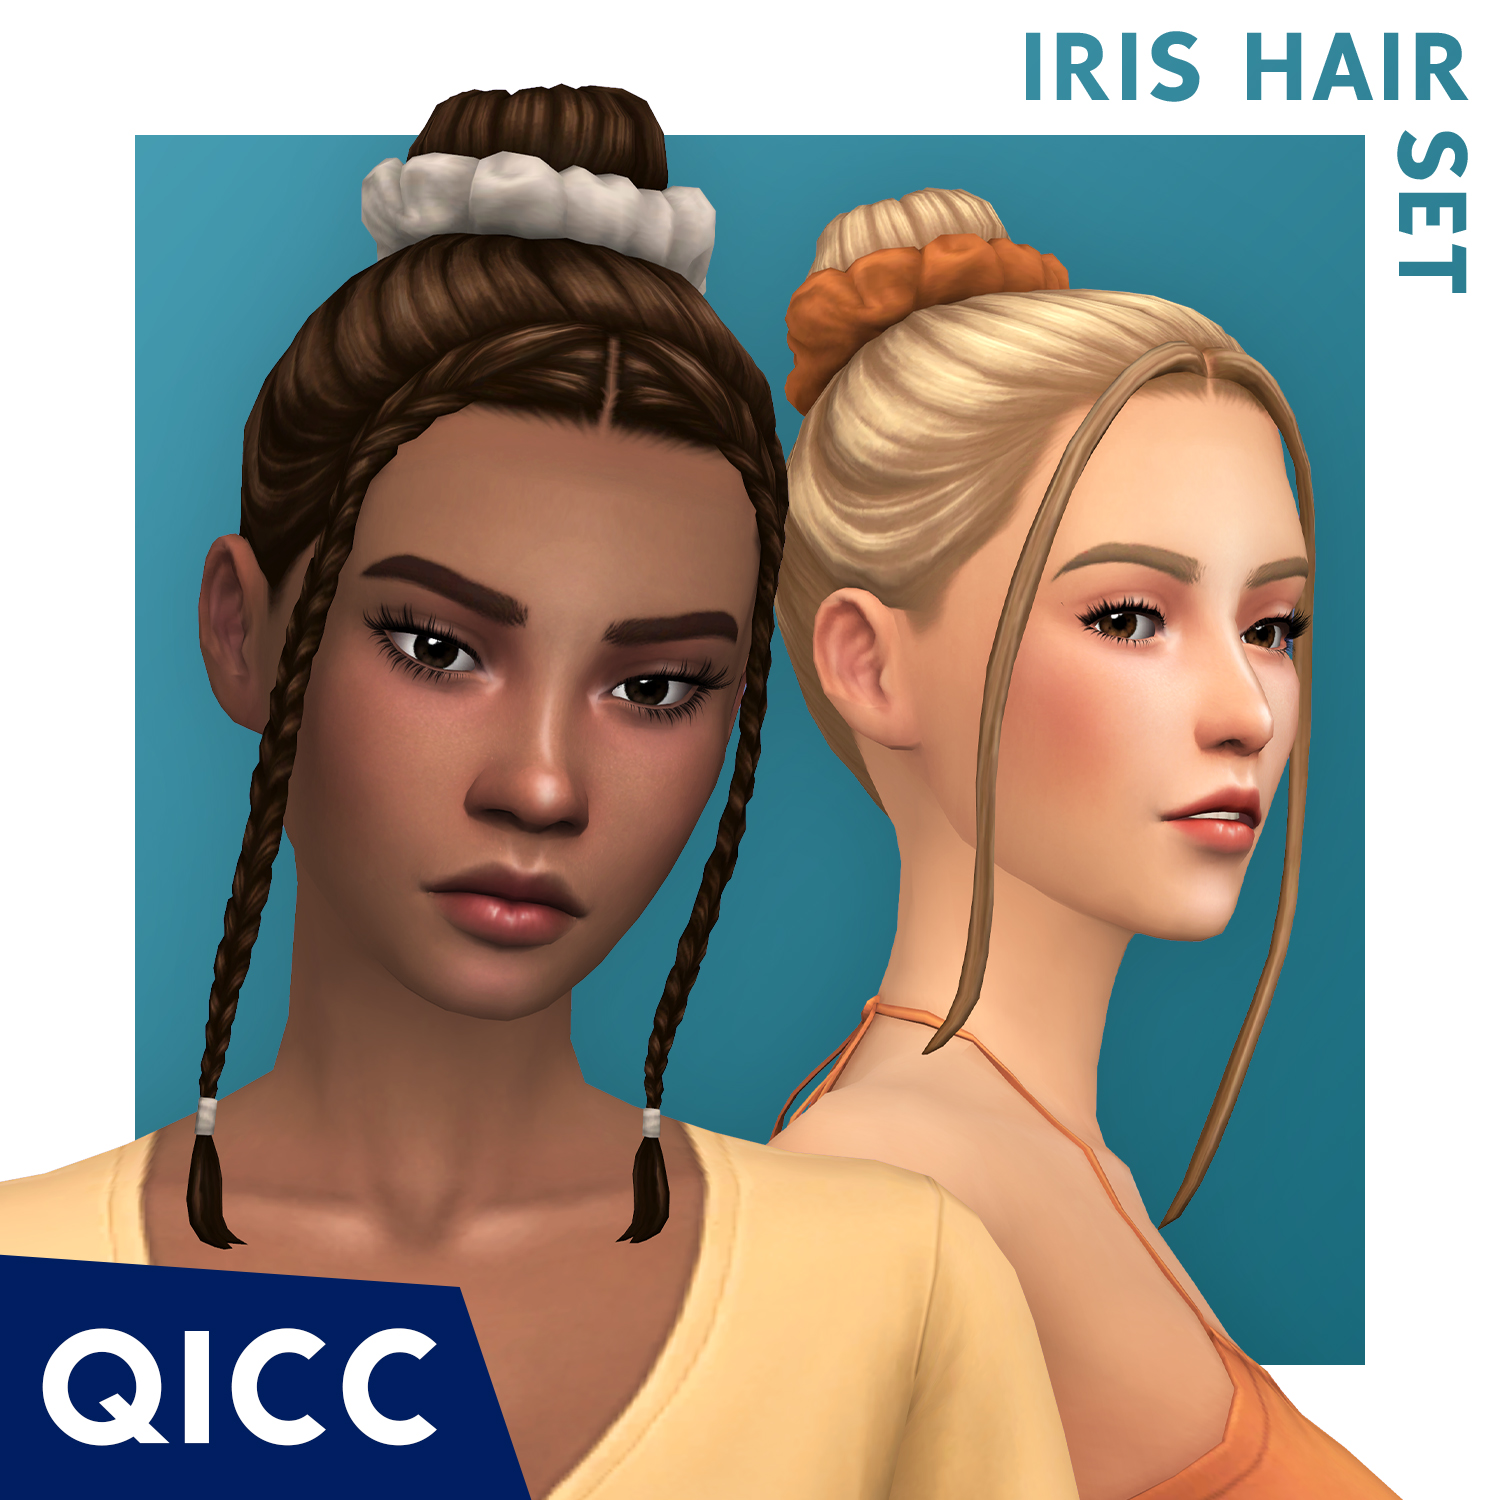 QICC - Iris Hair Set project avatar